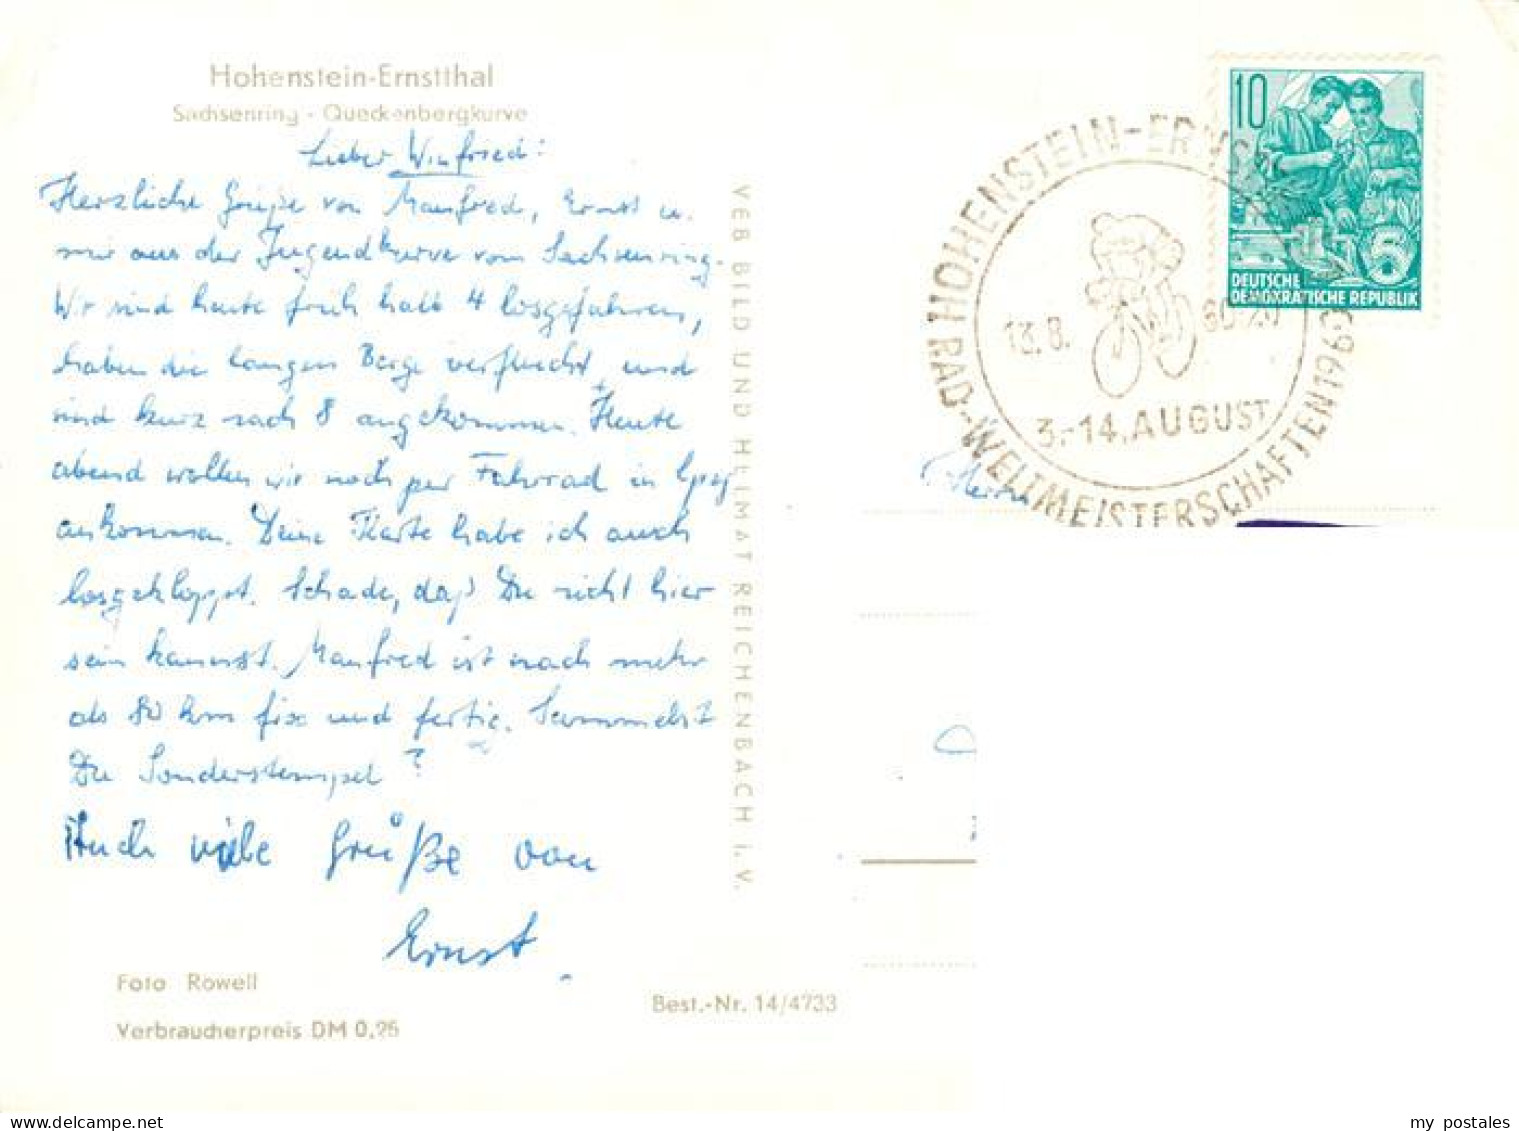 73873186 Hohenstein-Ernstthal Rad-Weltmeisterschaften 1960 Erinnerungskarte Hohe - Hohenstein-Ernstthal